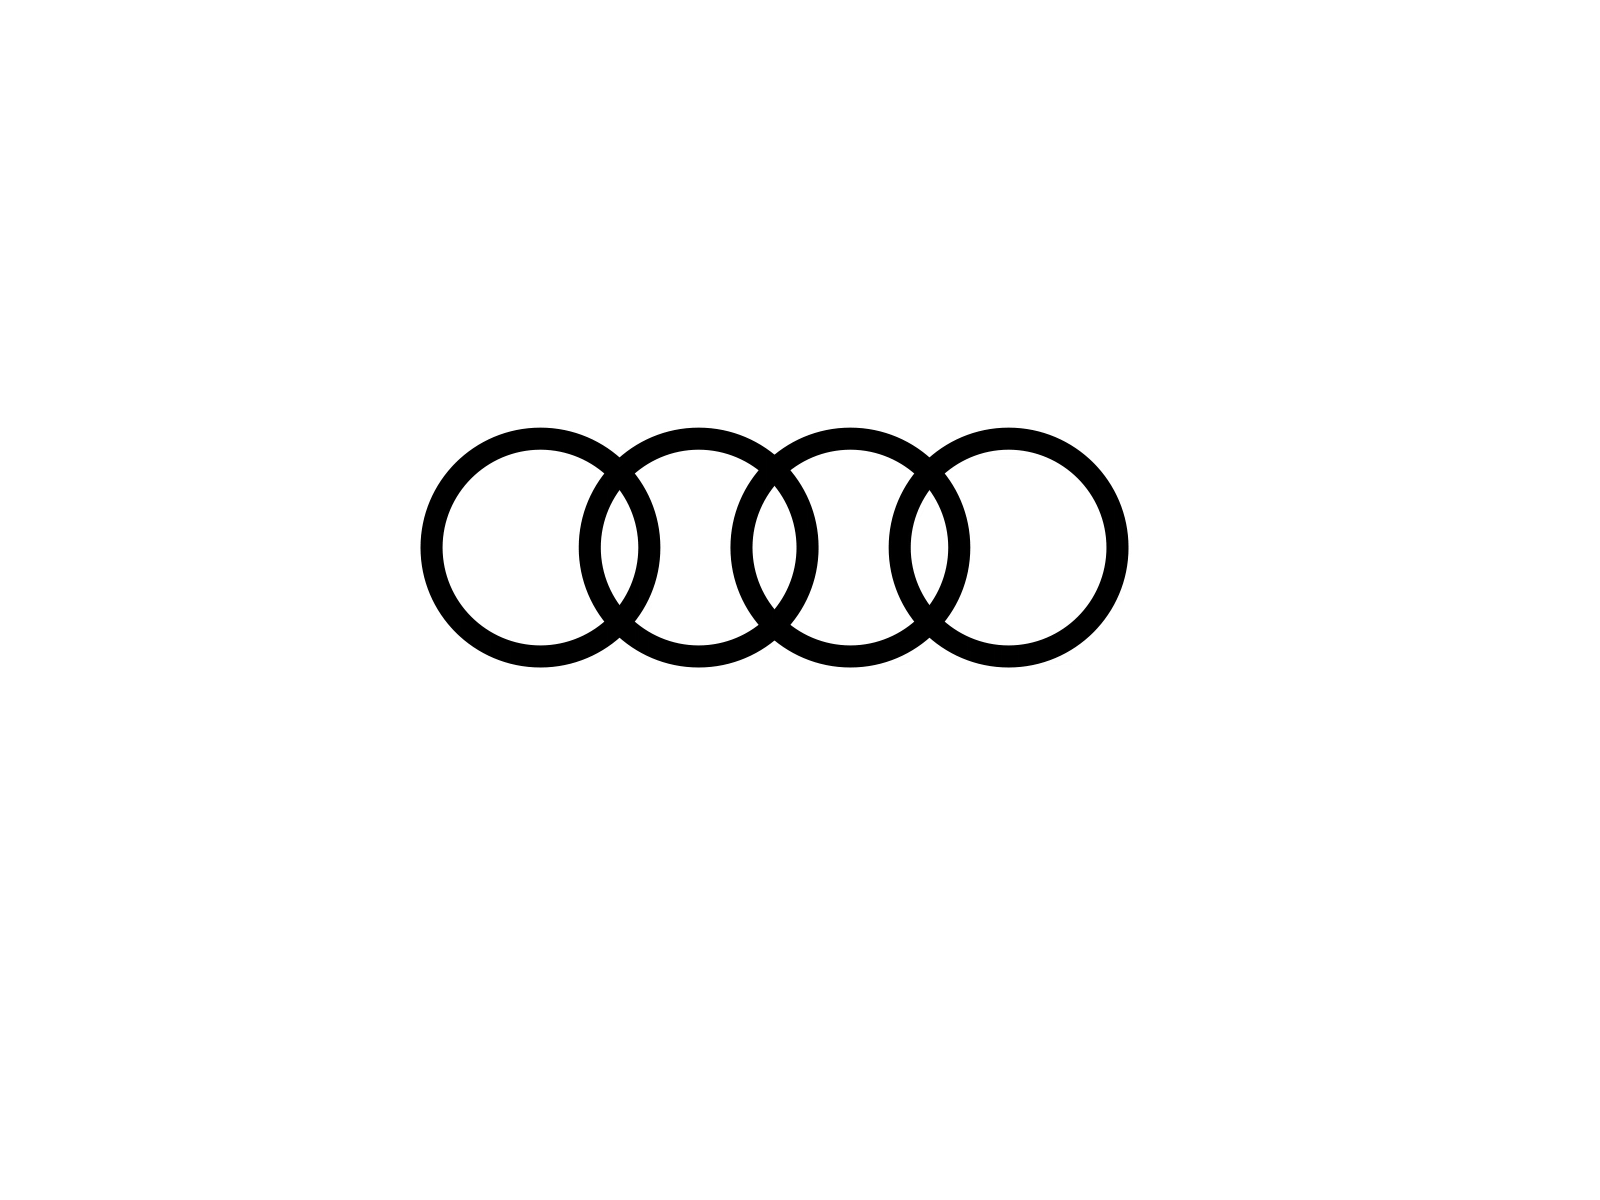 Audi Logo Animation by Ana Miminoshvili on Dribbble